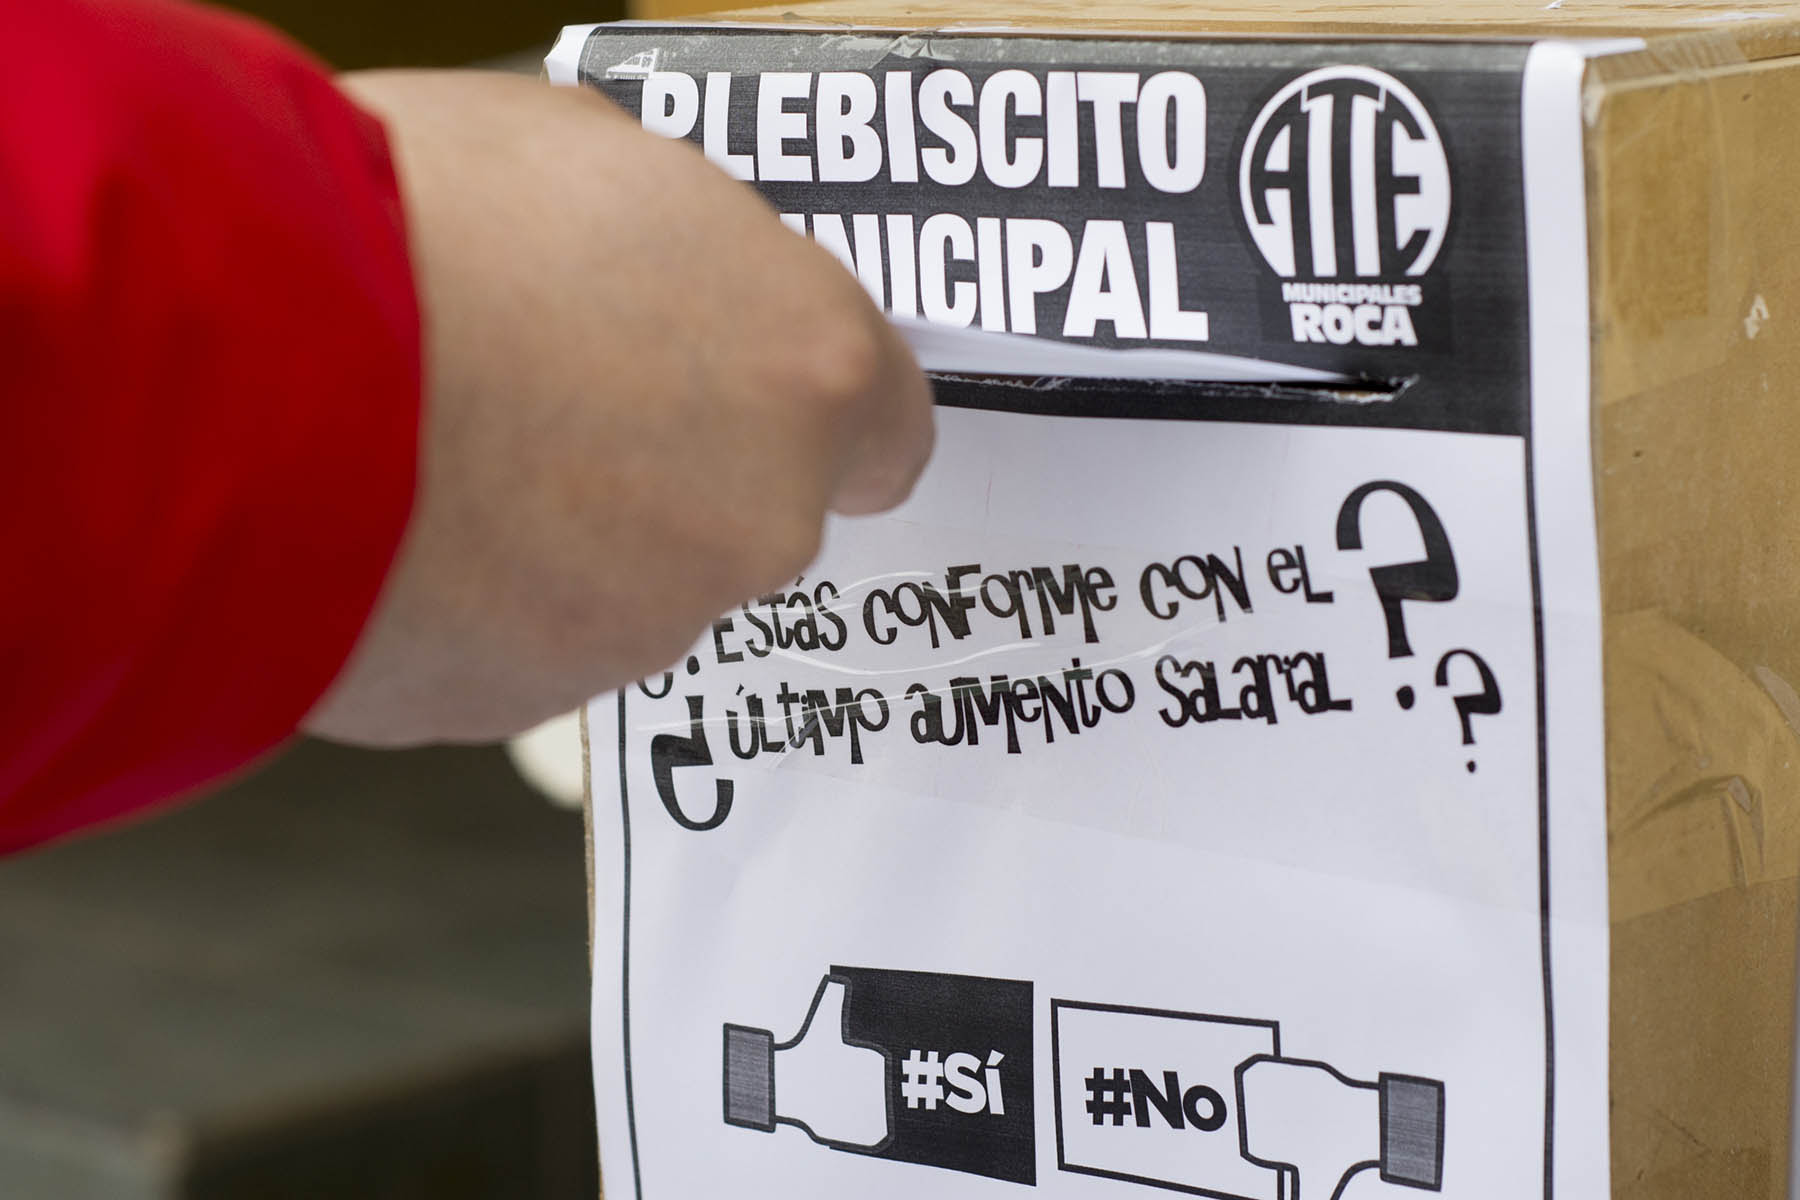 Roca: Plebiscito municipal da la razón a ATE y el sindicato demanda reabrir las paritarias